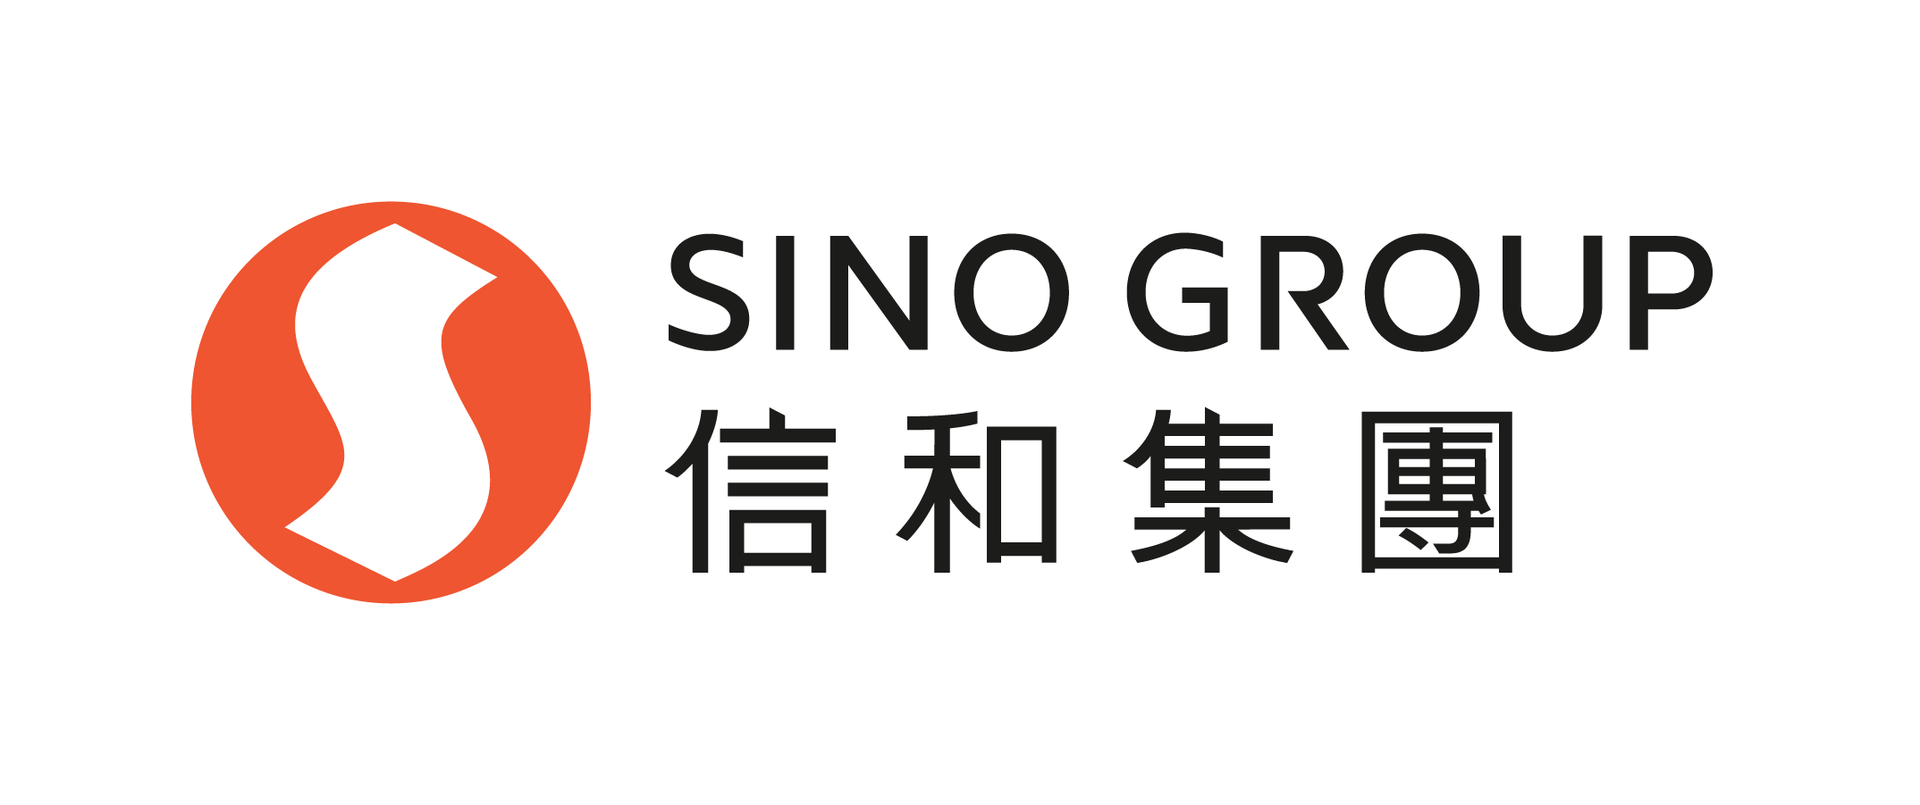 ci-logo-sinogroup_R_50%.png